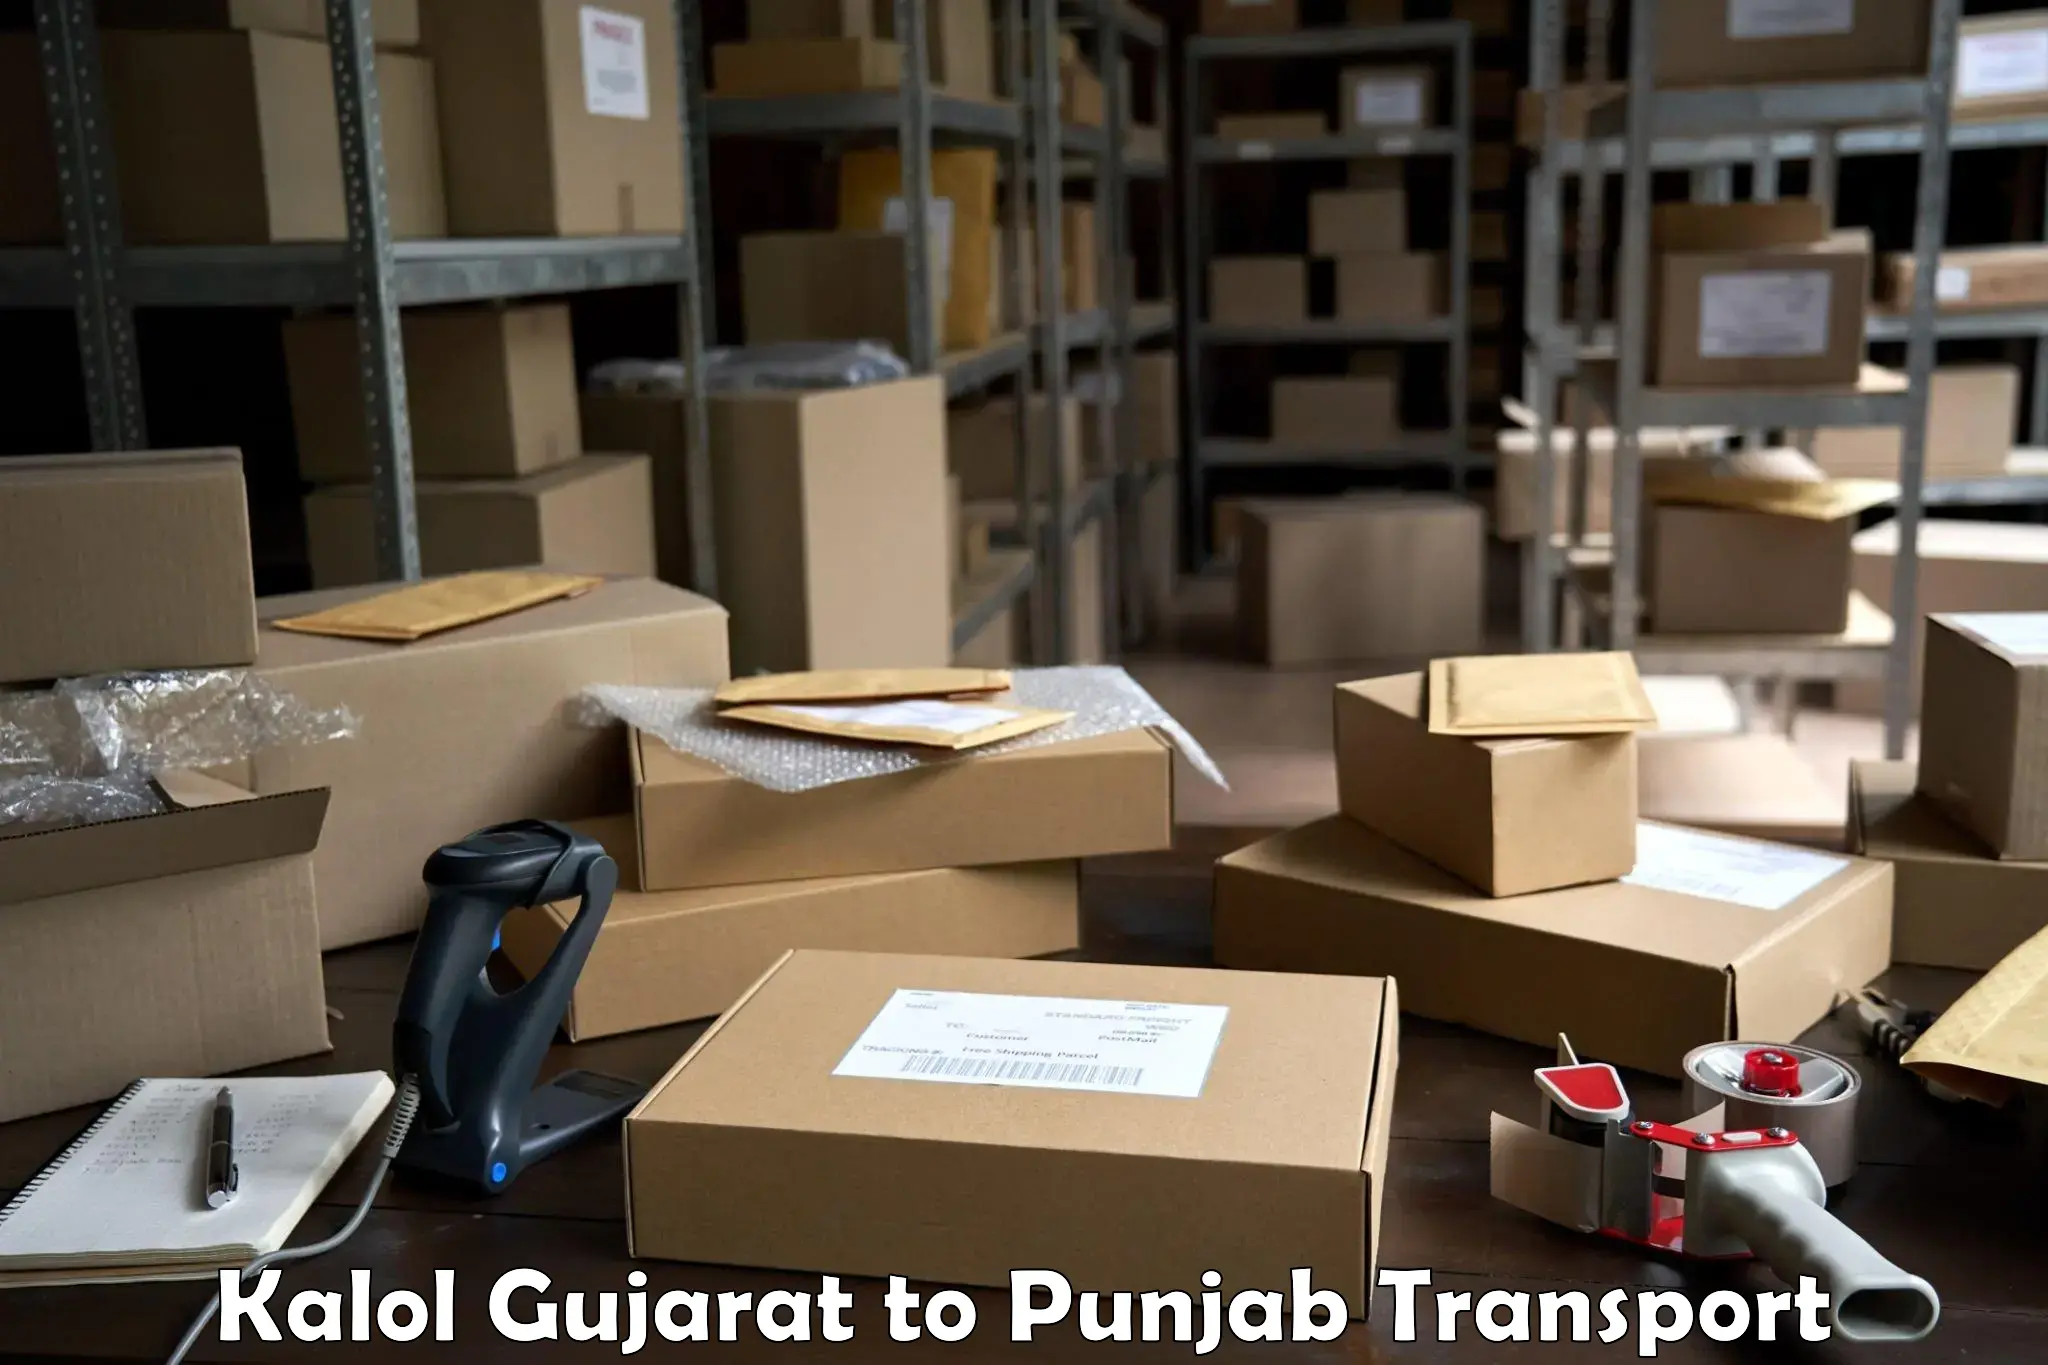 Pick up transport service Kalol Gujarat to Punjab